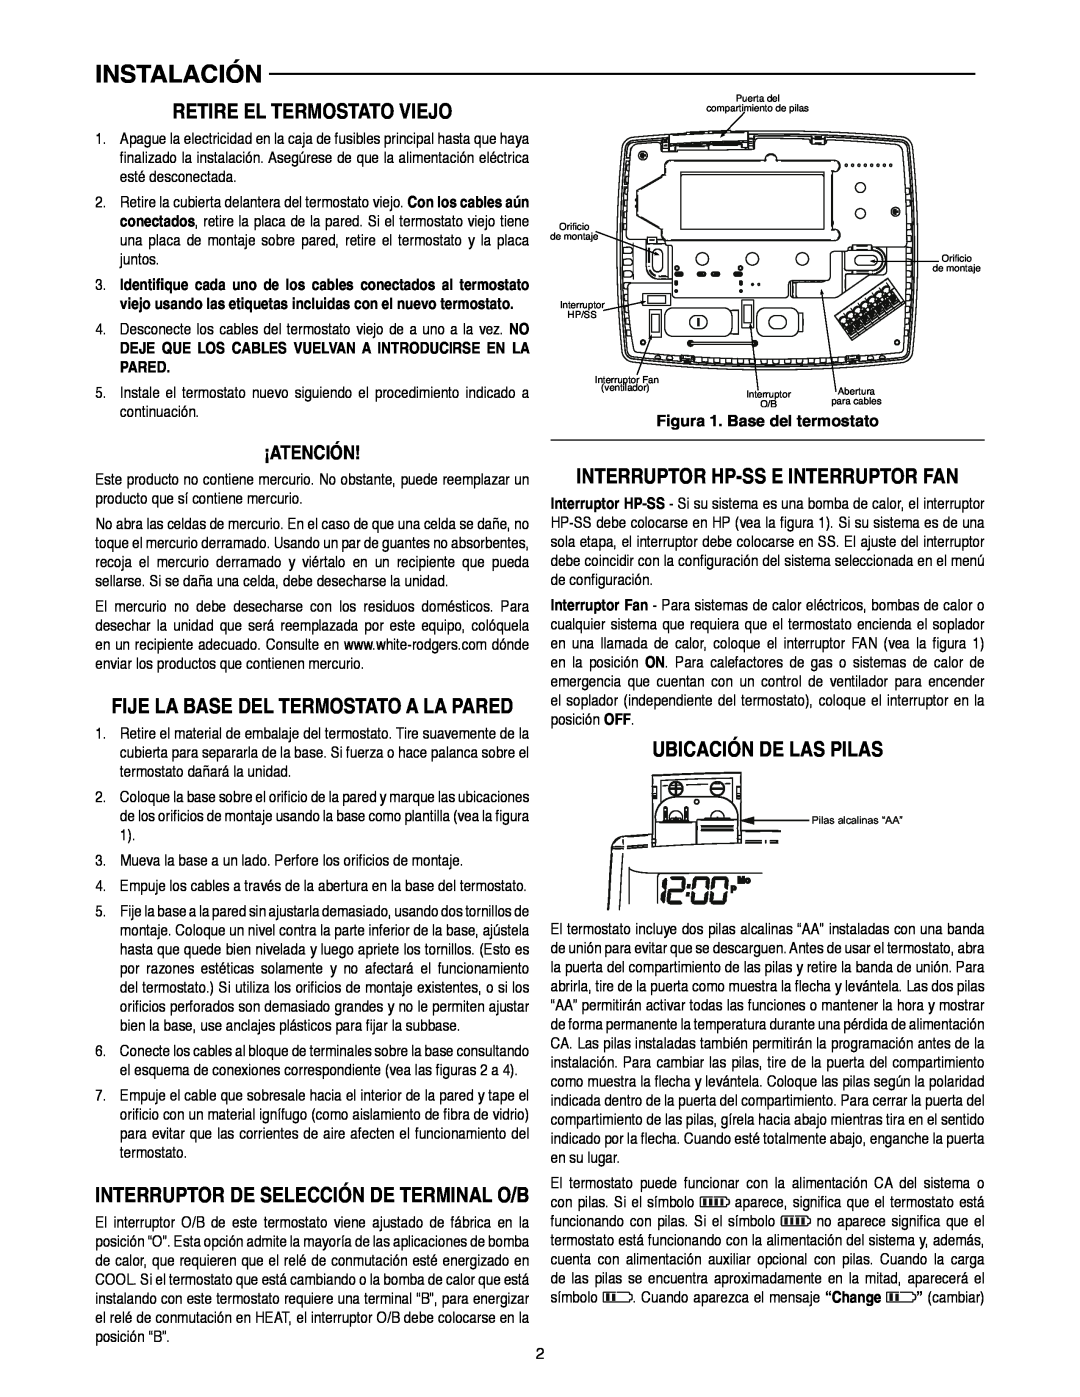 White Rodgers 1F82-0261 manual Instalación, Retire El Termostato Viejo, Interruptor Hp-Ss E Interruptor Fan, ¡Atención 